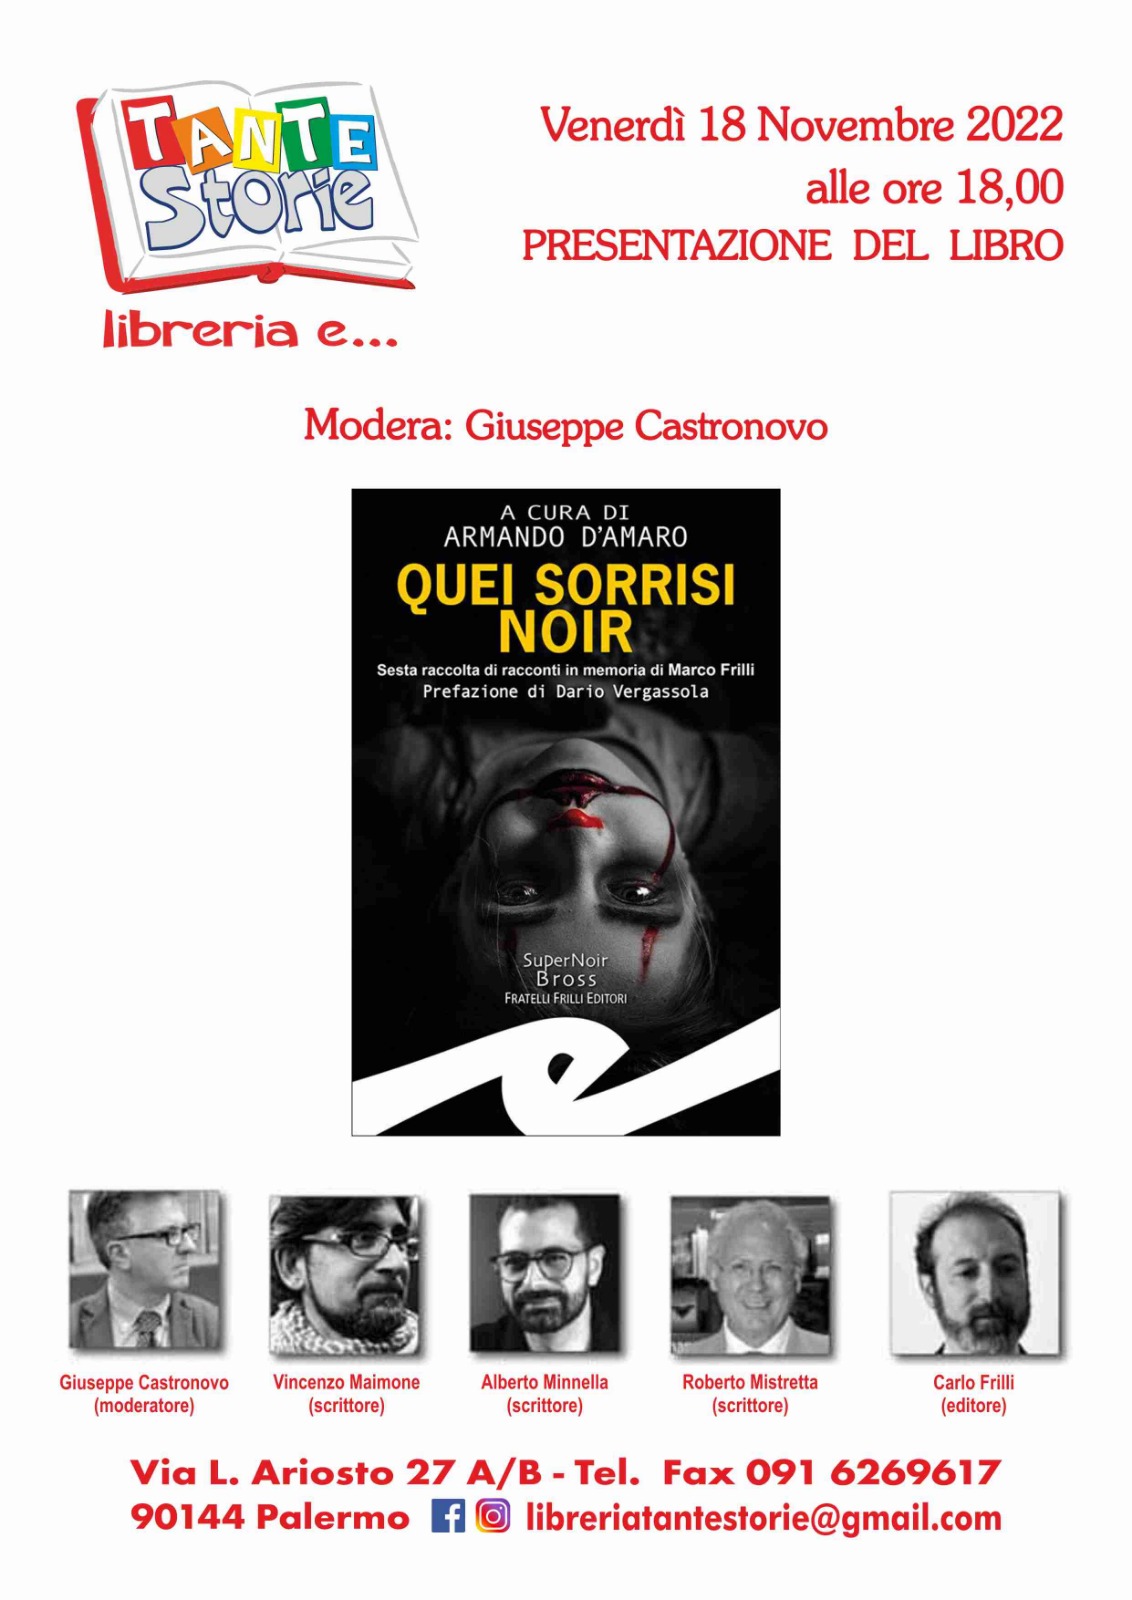 Palermo, alla libreria Tante Storie si presenta il libro "Quei sorrisi noir" in memoria di Marco Frilli